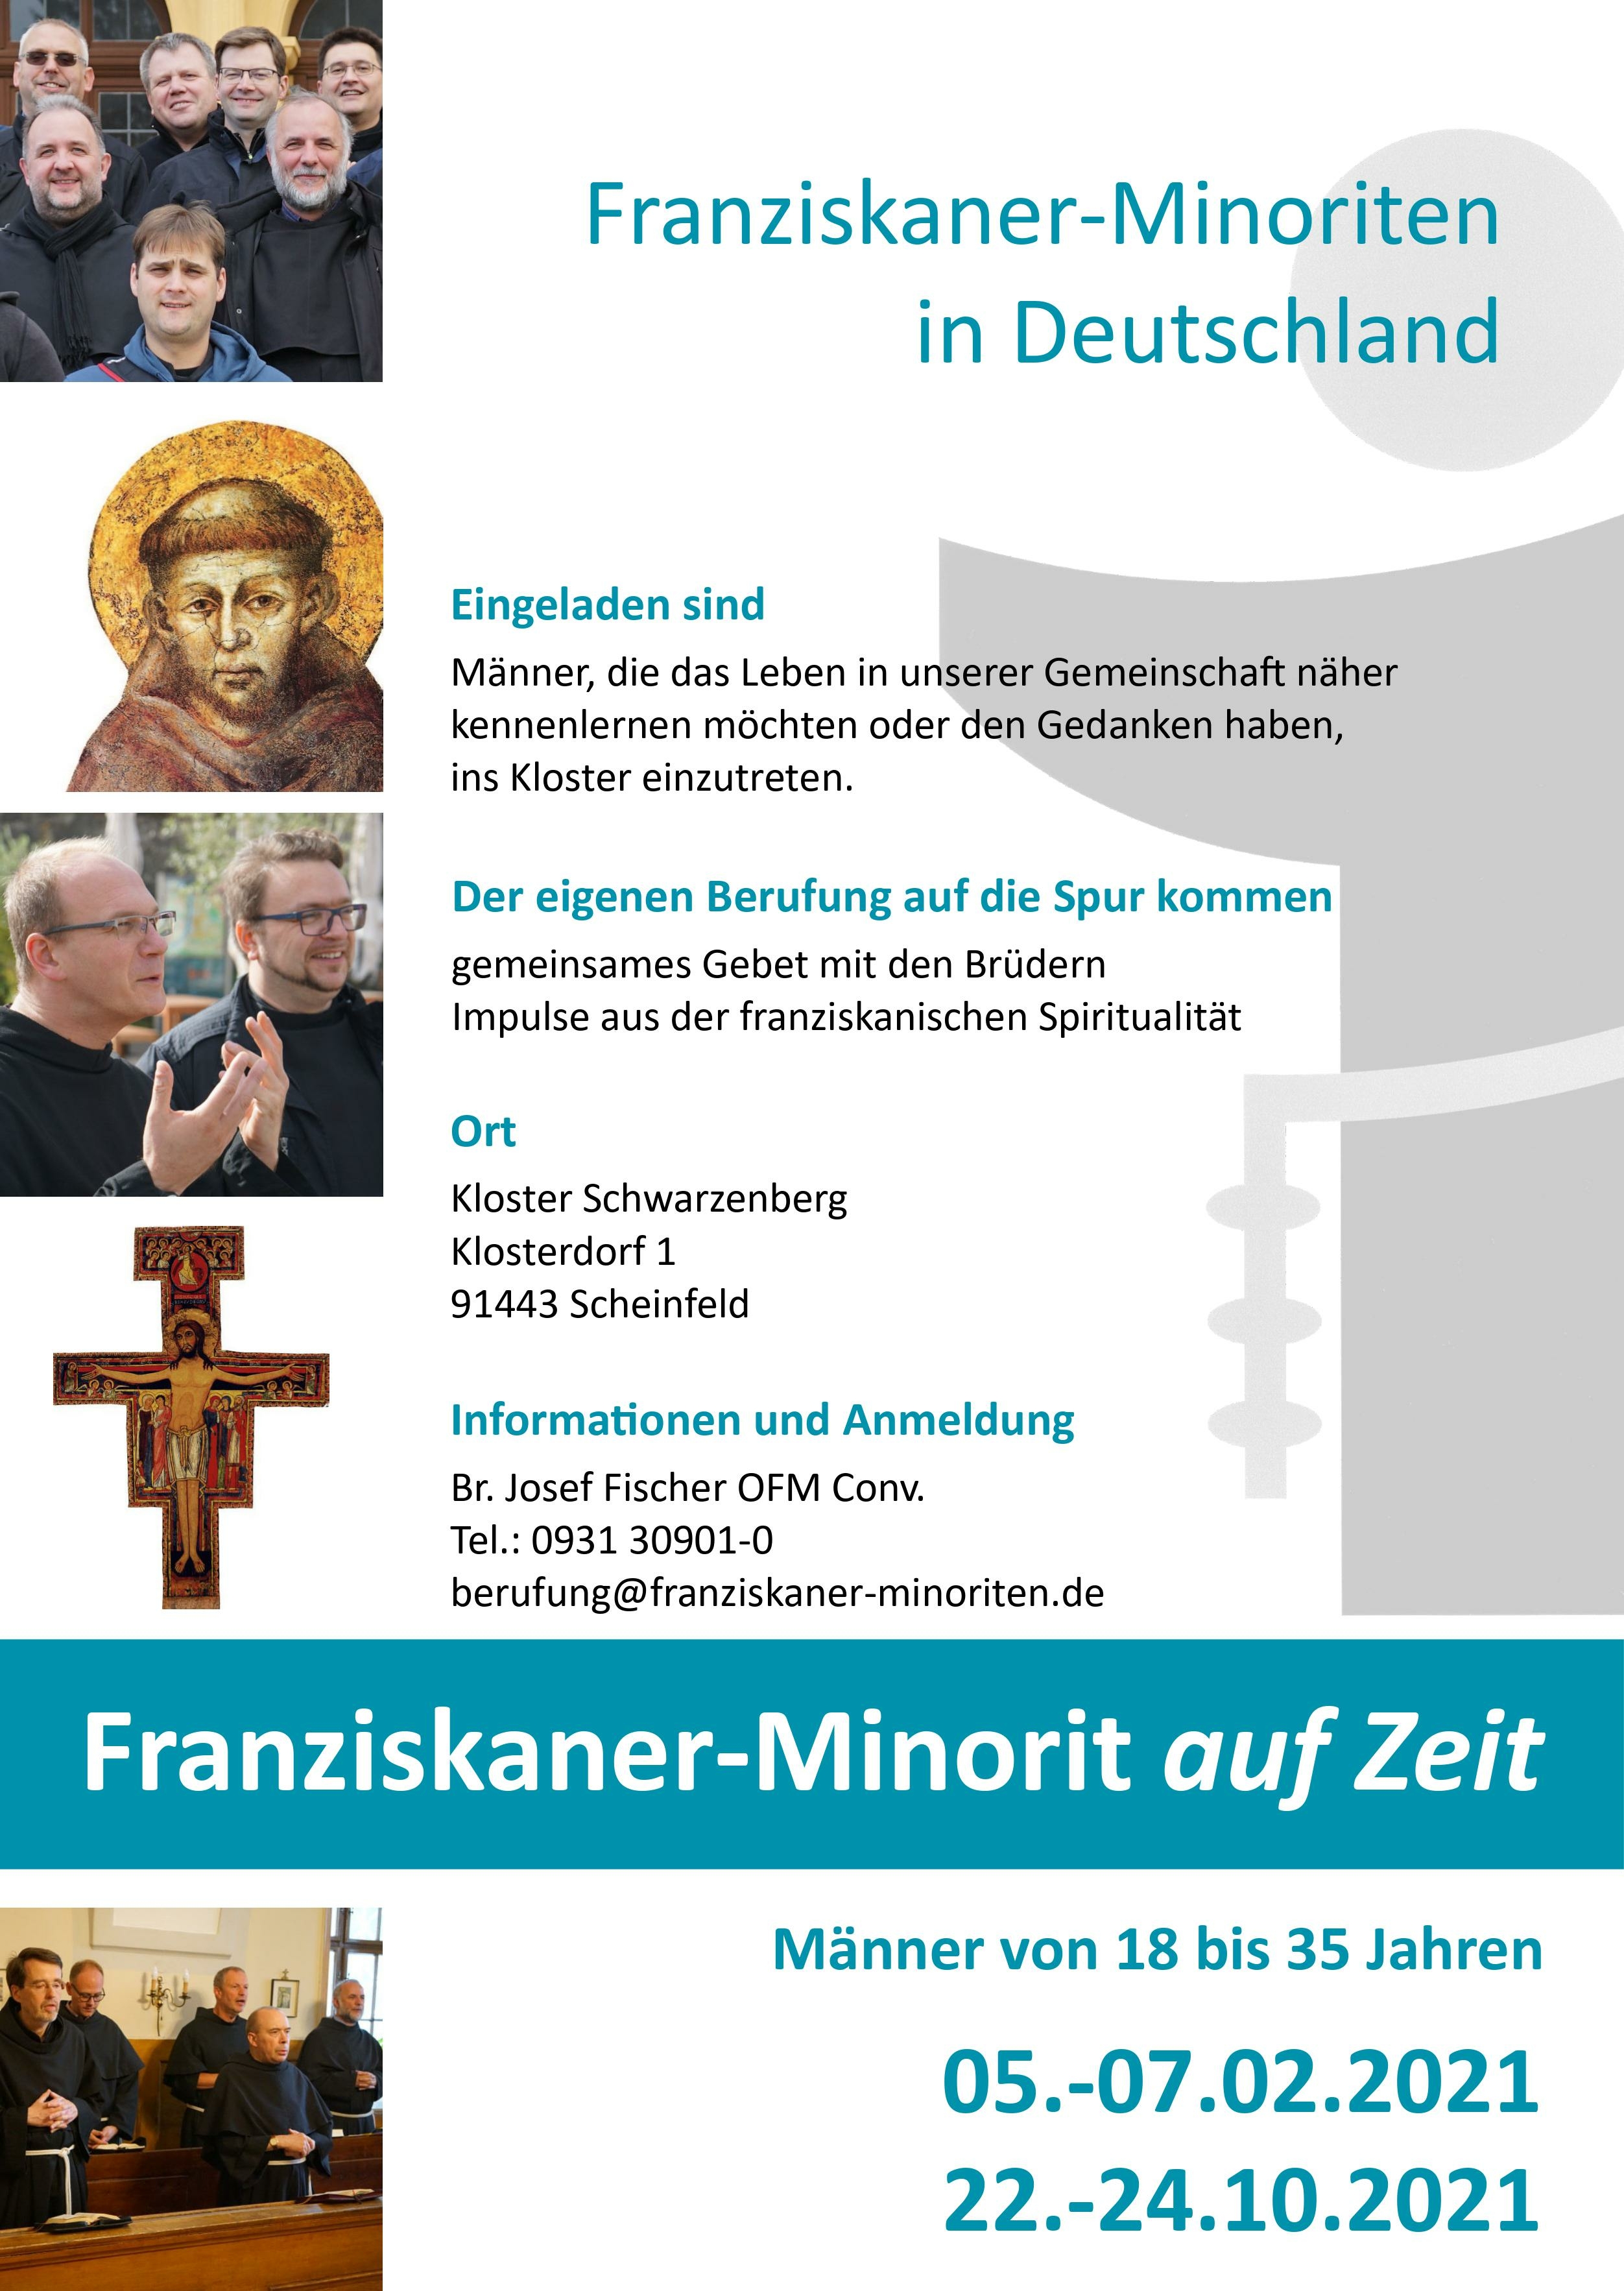 Franziskaner Minorit auf Zeit 2021 Plakat A4